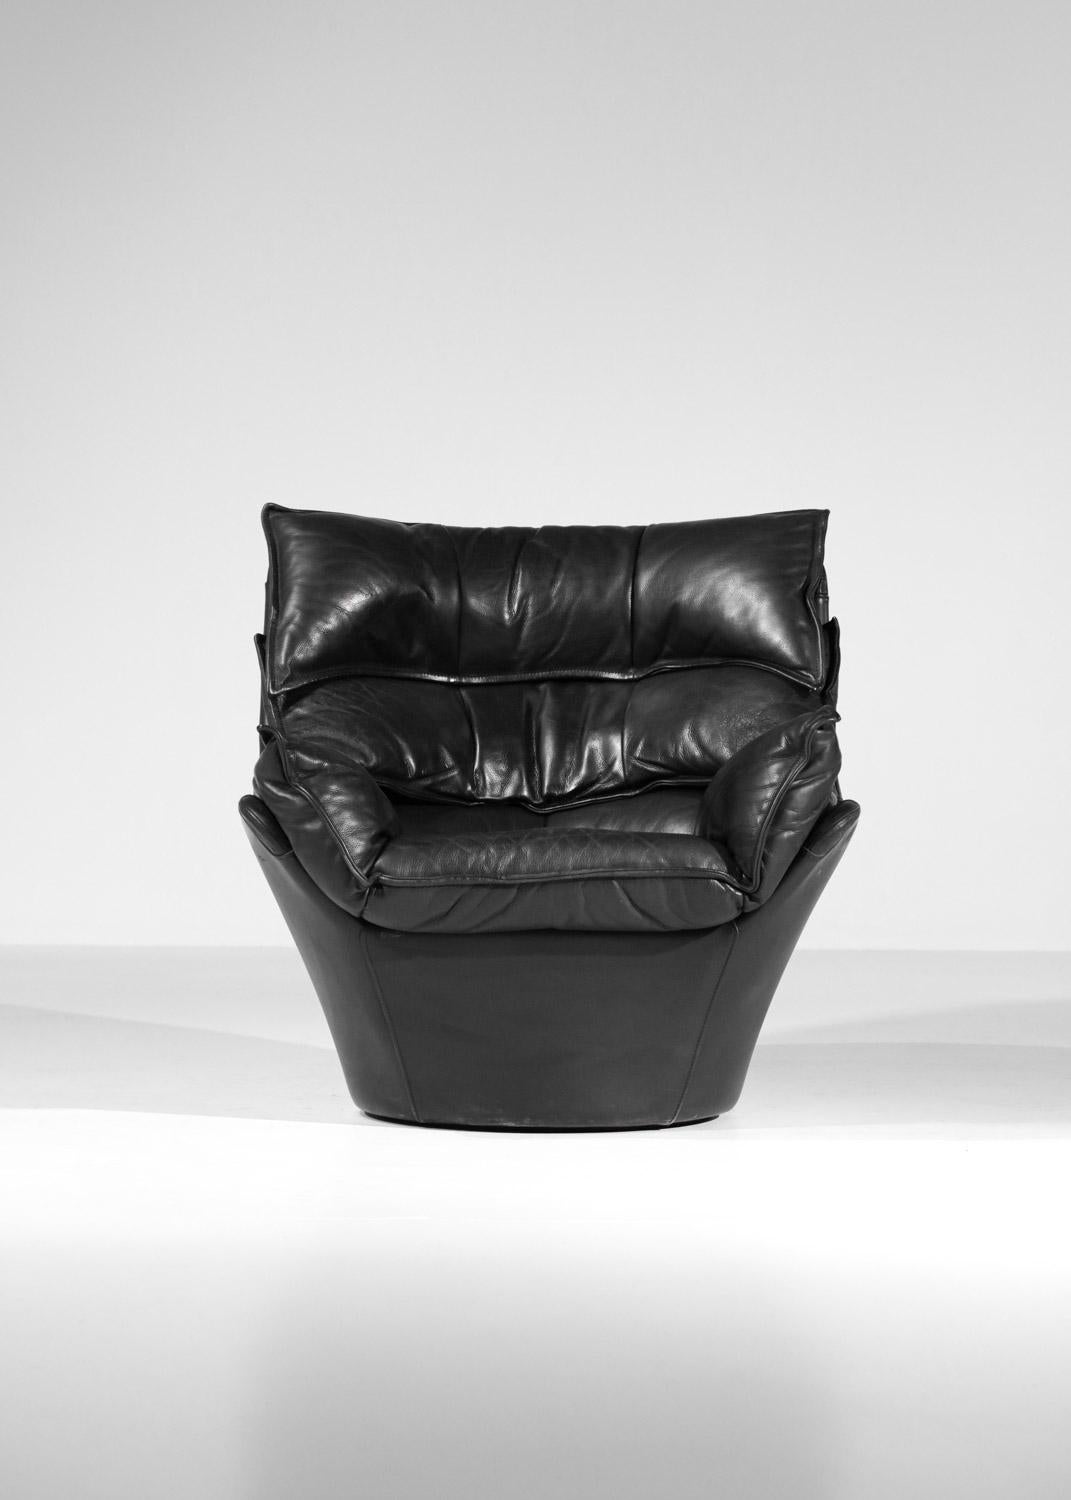 Großer Sessel und Fußstütze aus schwarzem Leder Bernard Massot, Bernard Massot, Jahre 70/80 8